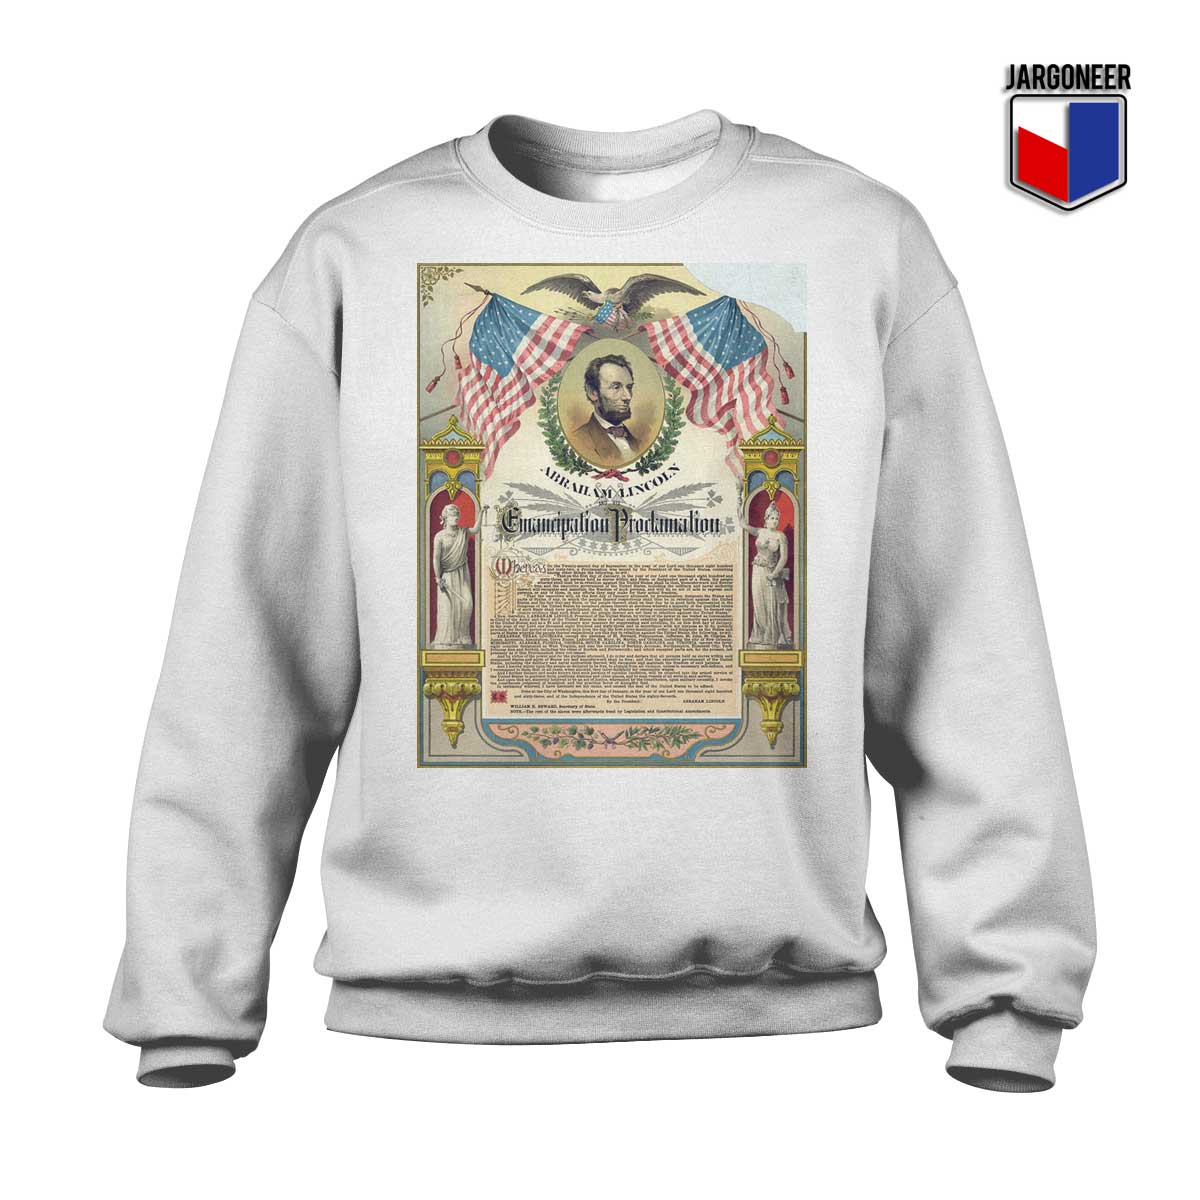 Emancipation proclamation White Sweatshirt - Shop Unique Graphic Cool Shirt Designs